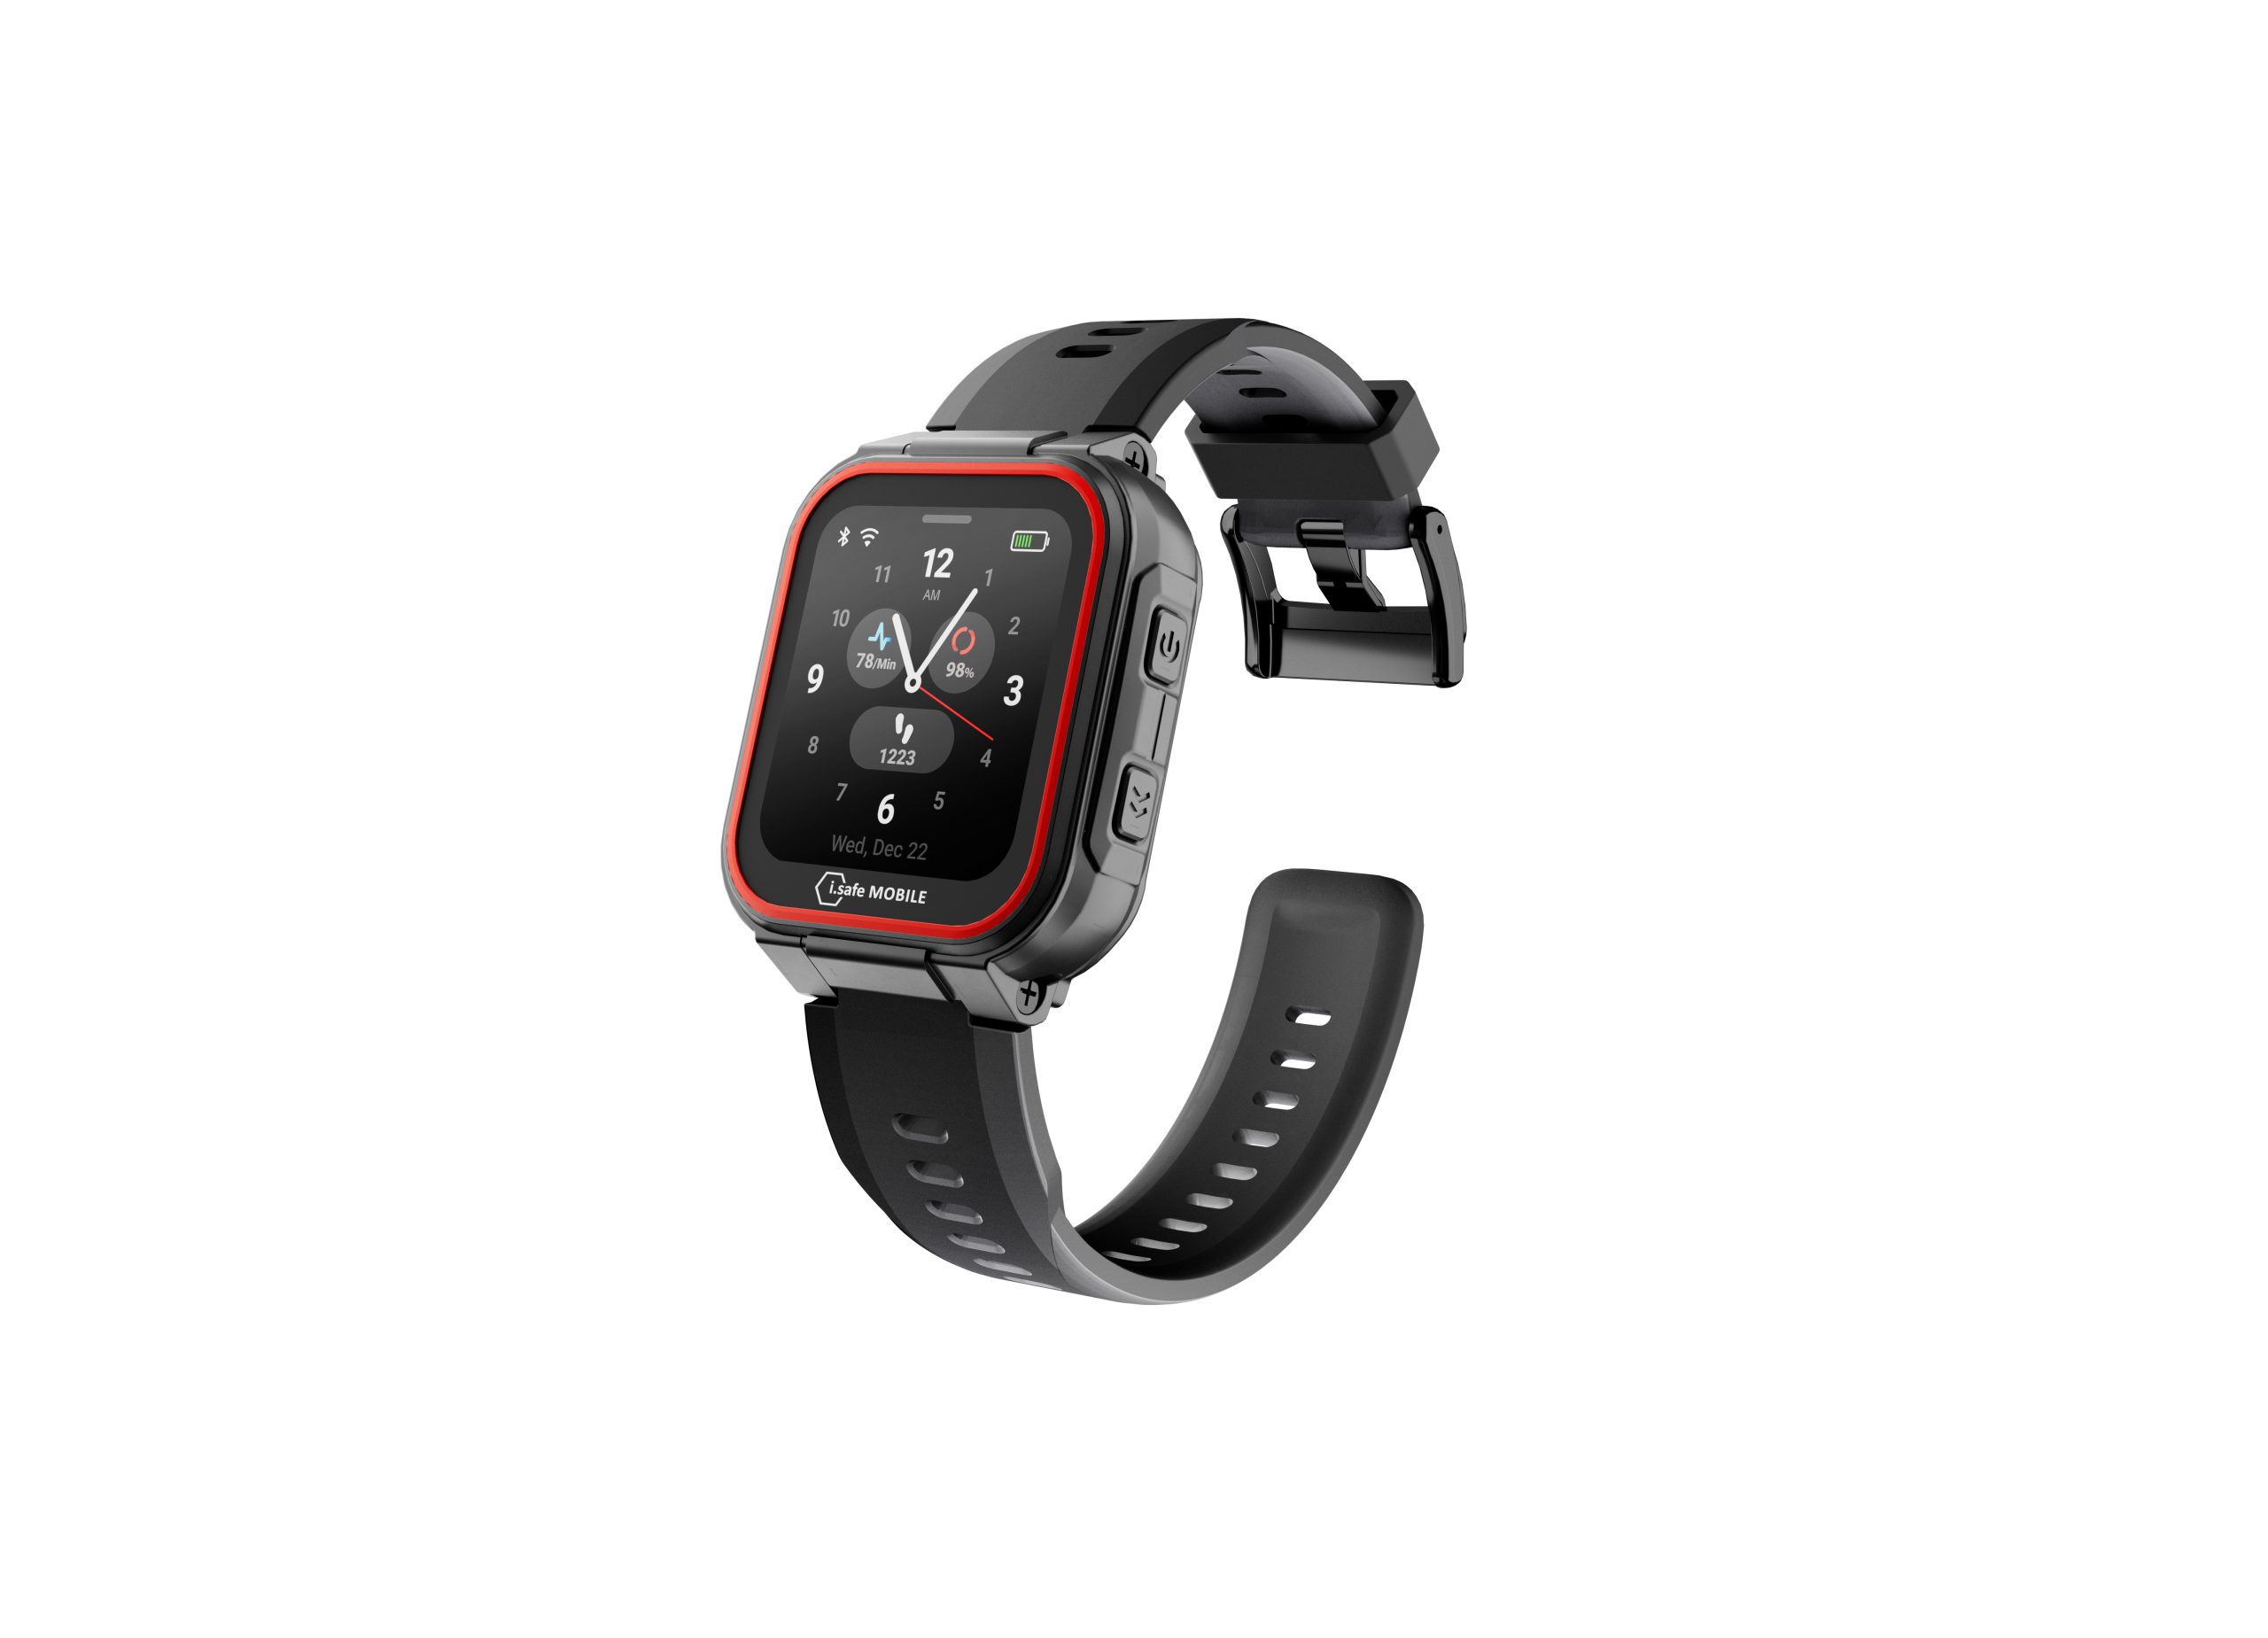 Atex/IECEx-zertifizierte Smartwatch für Zonen 1/21